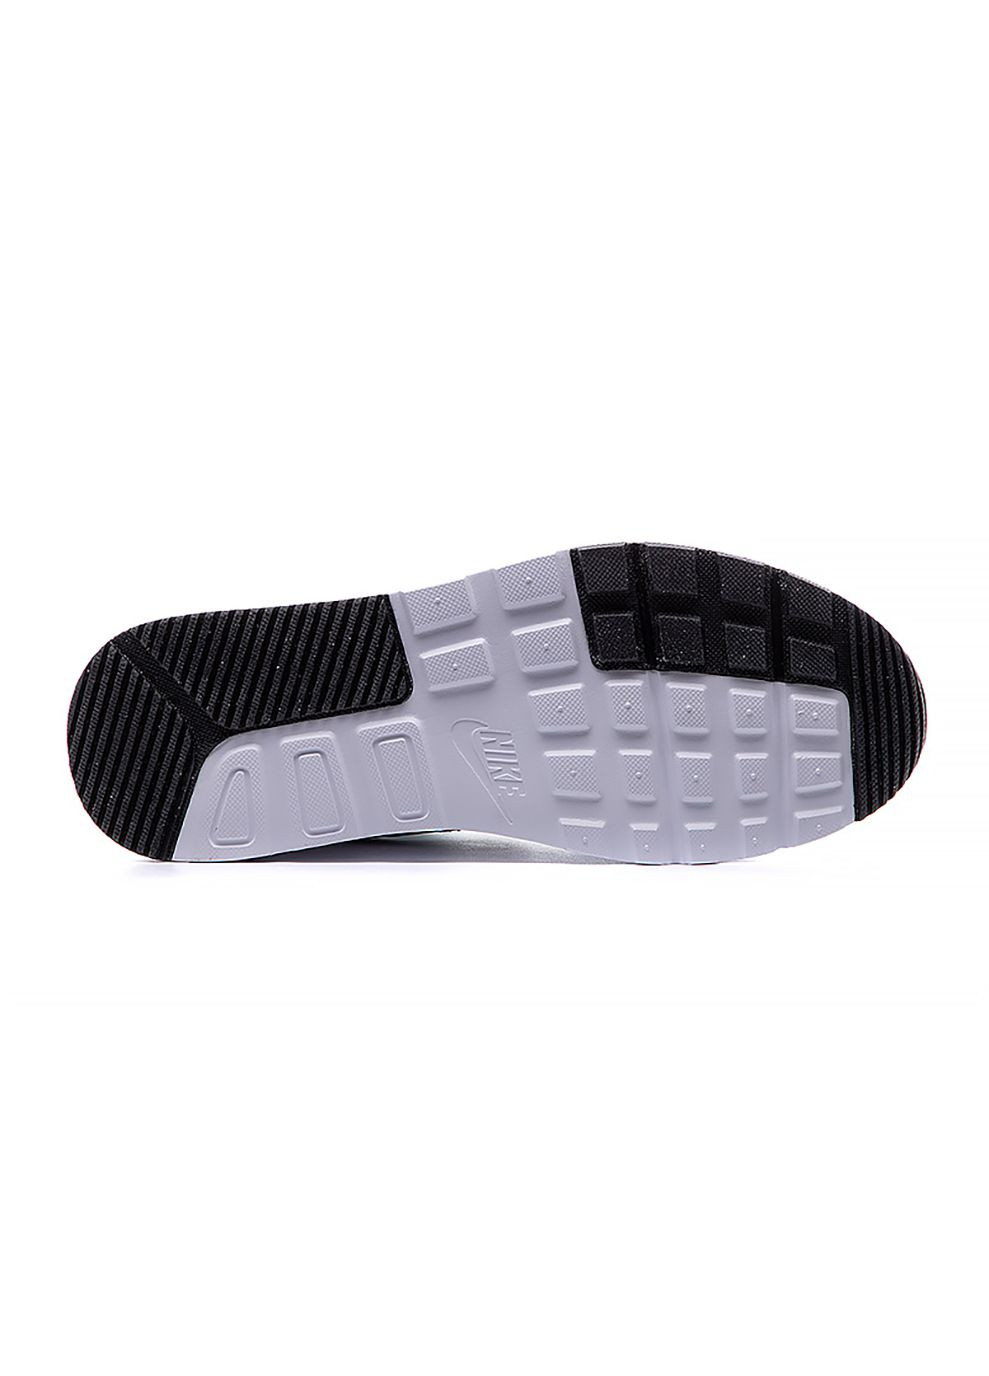 Белые демисезонные женские кроссовки air max sc белый Nike